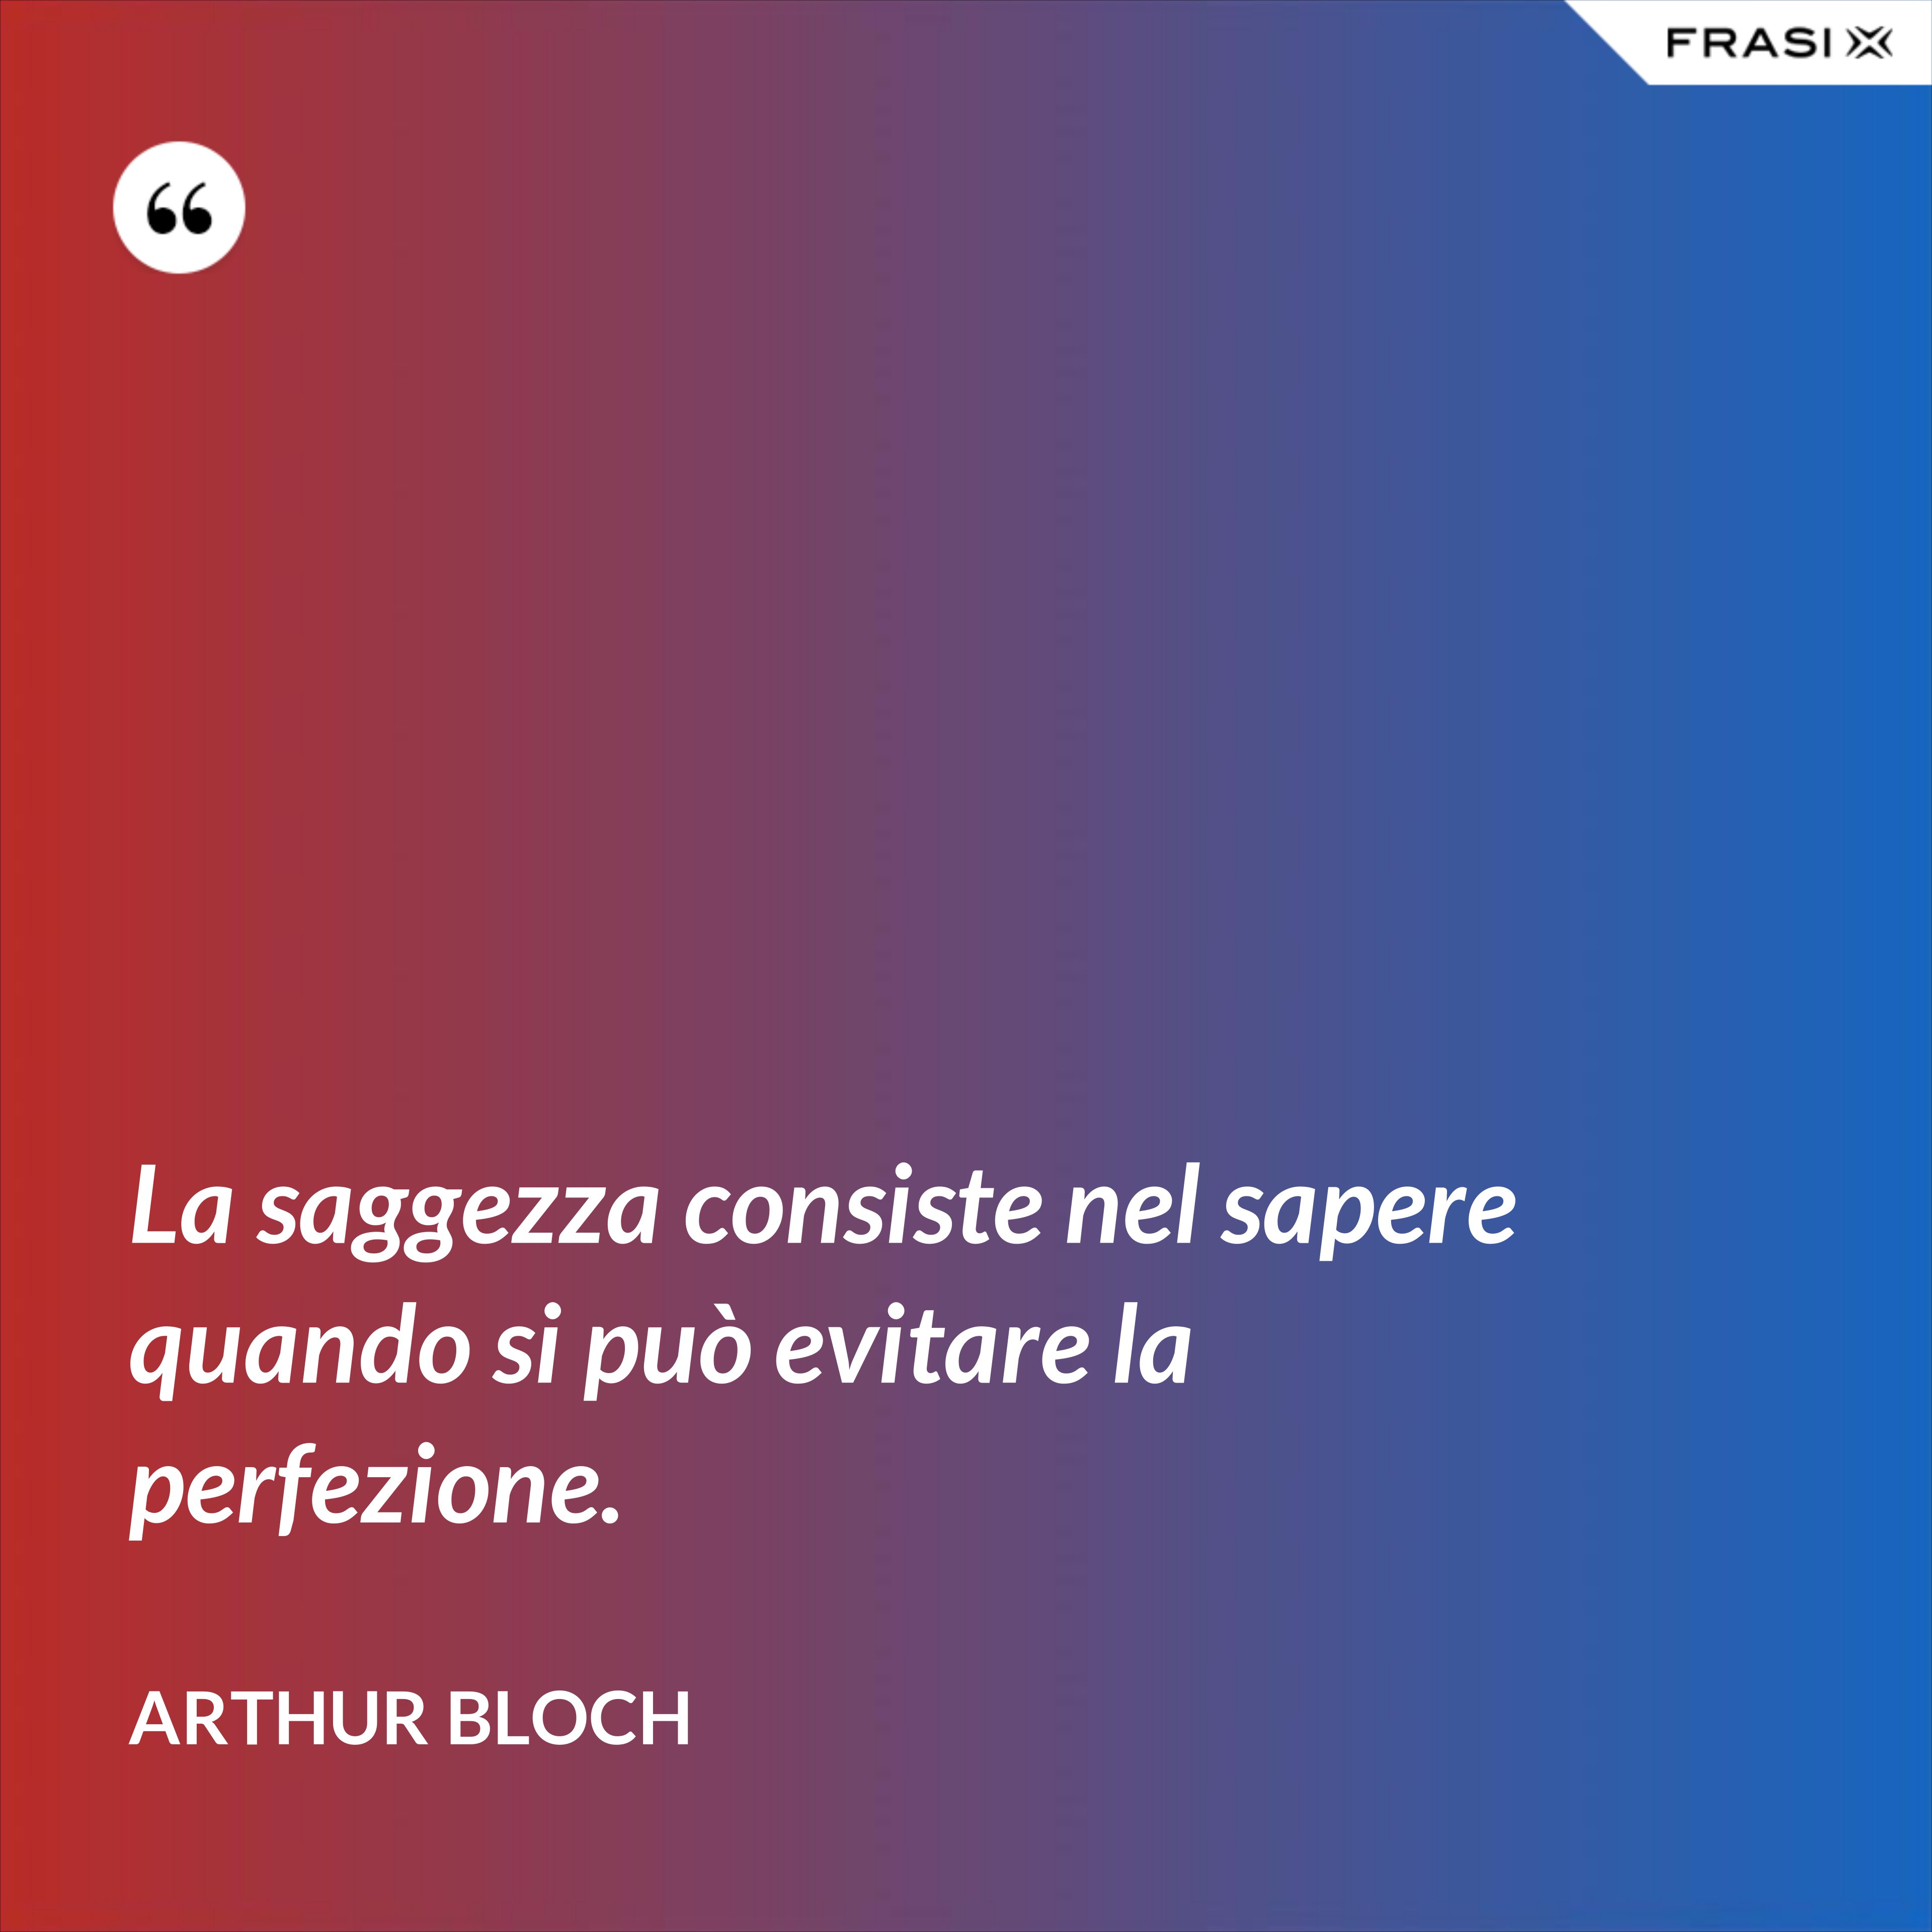 La saggezza consiste nel sapere quando si può evitare la perfezione. - Arthur Bloch